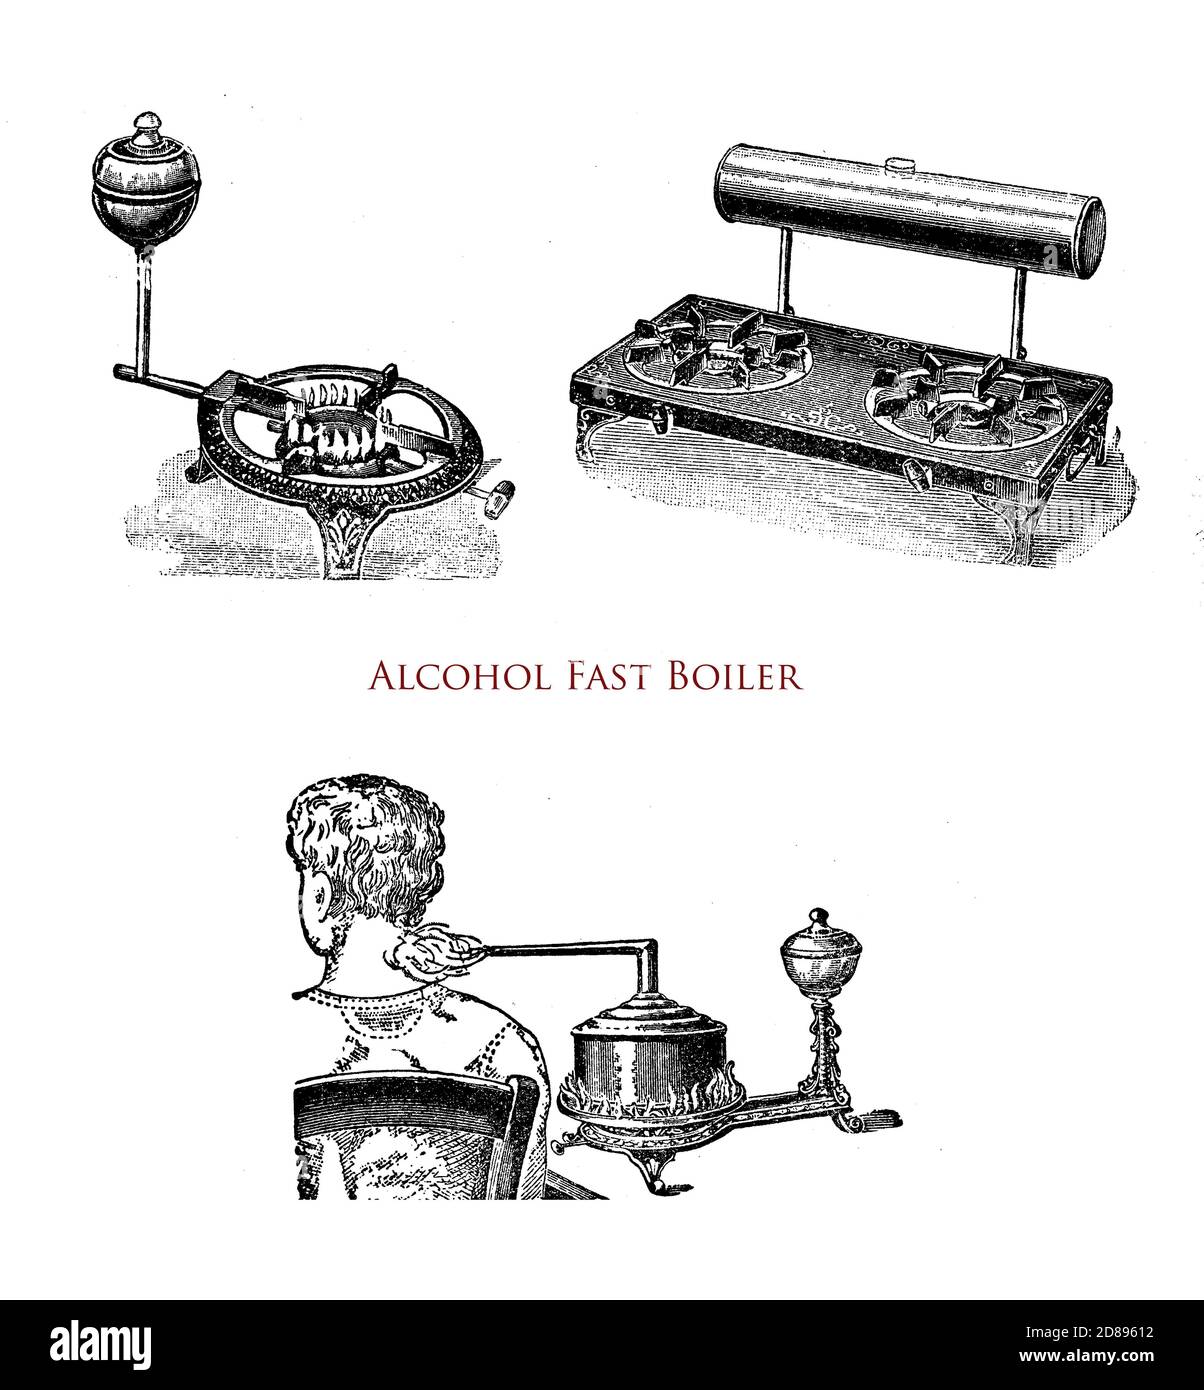 Alkohol-Schnellkessel für die Küche und für therapeutische Anwendung, 19. Jahrhundert Illustration Stockfoto